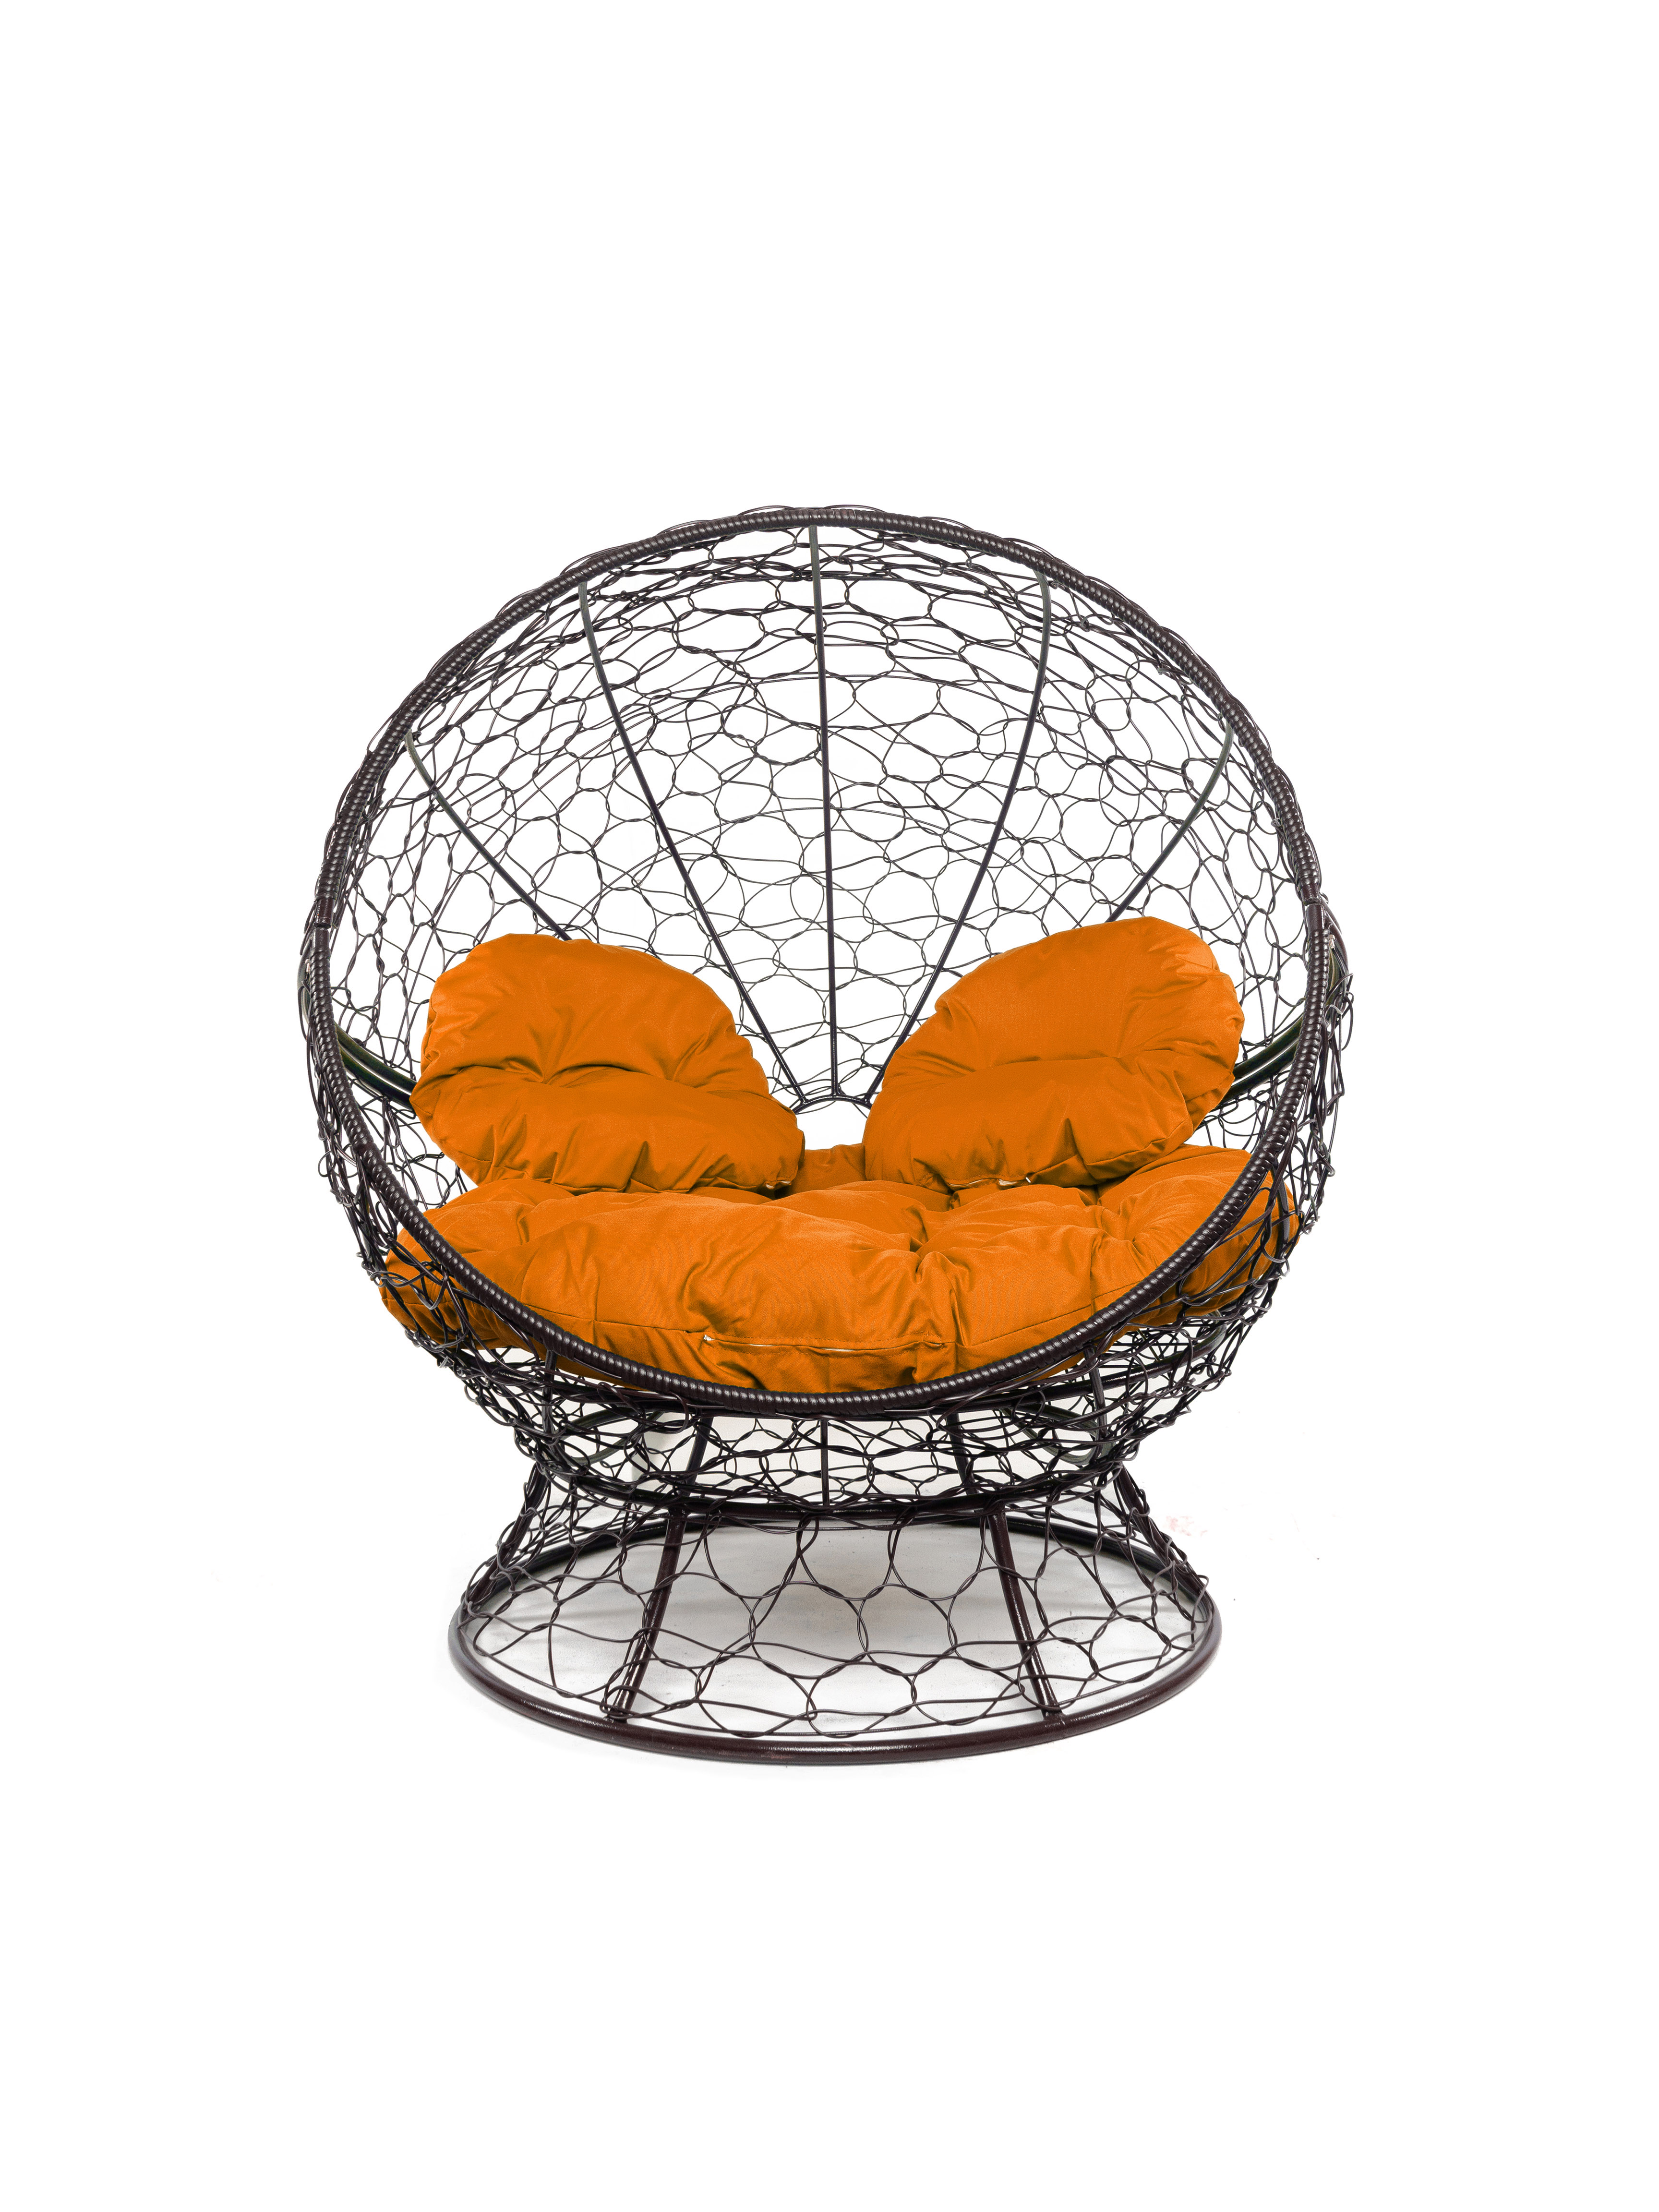 Кресло садовое M-Group Апельсин коричневое 11520207 оранжевая подушка